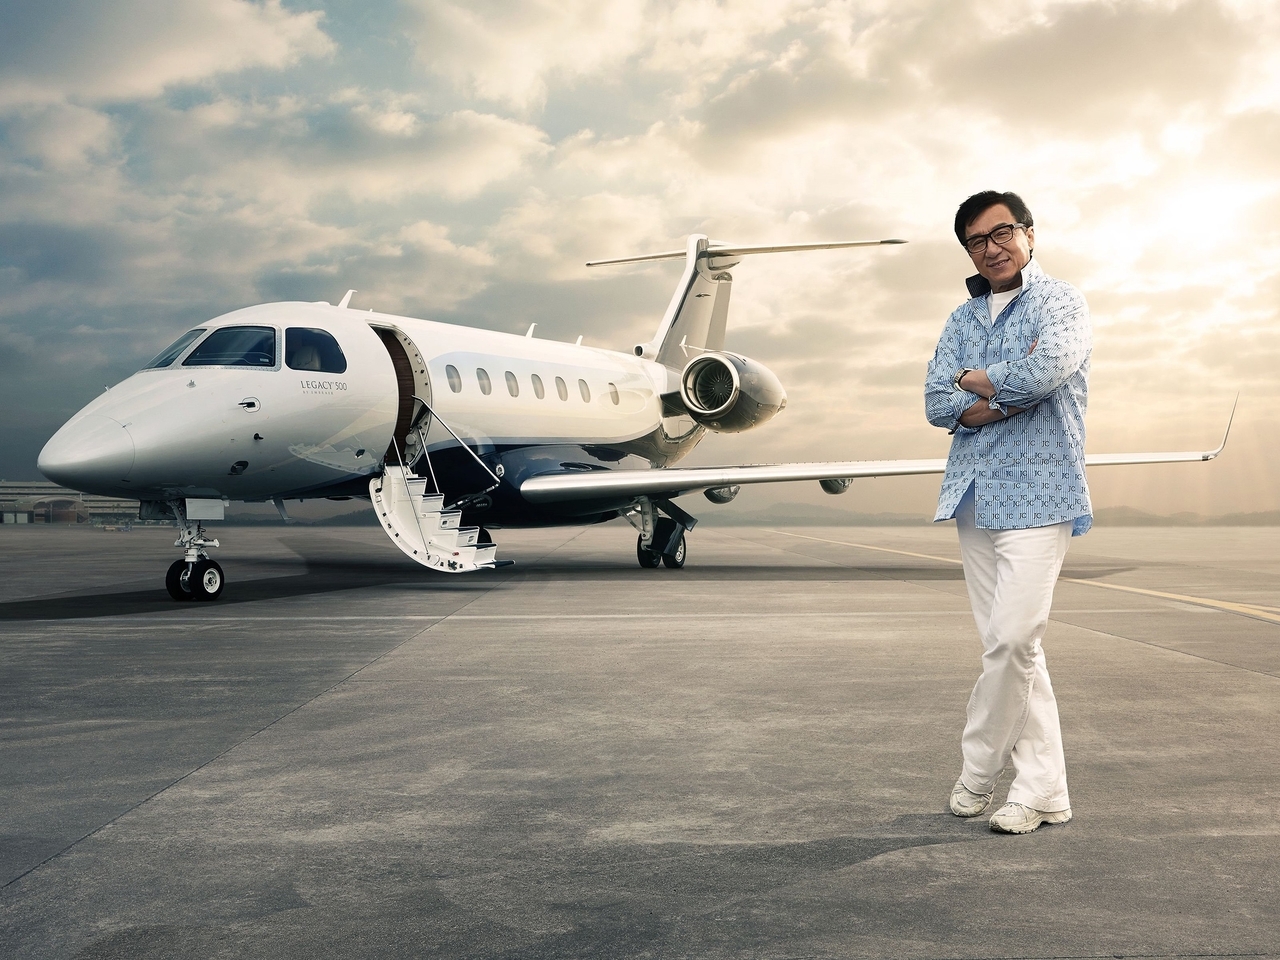 Картинка: Embraer Legacy 500, Джеки Чан, актёр, мужчина, стоит, очки, небо, облака